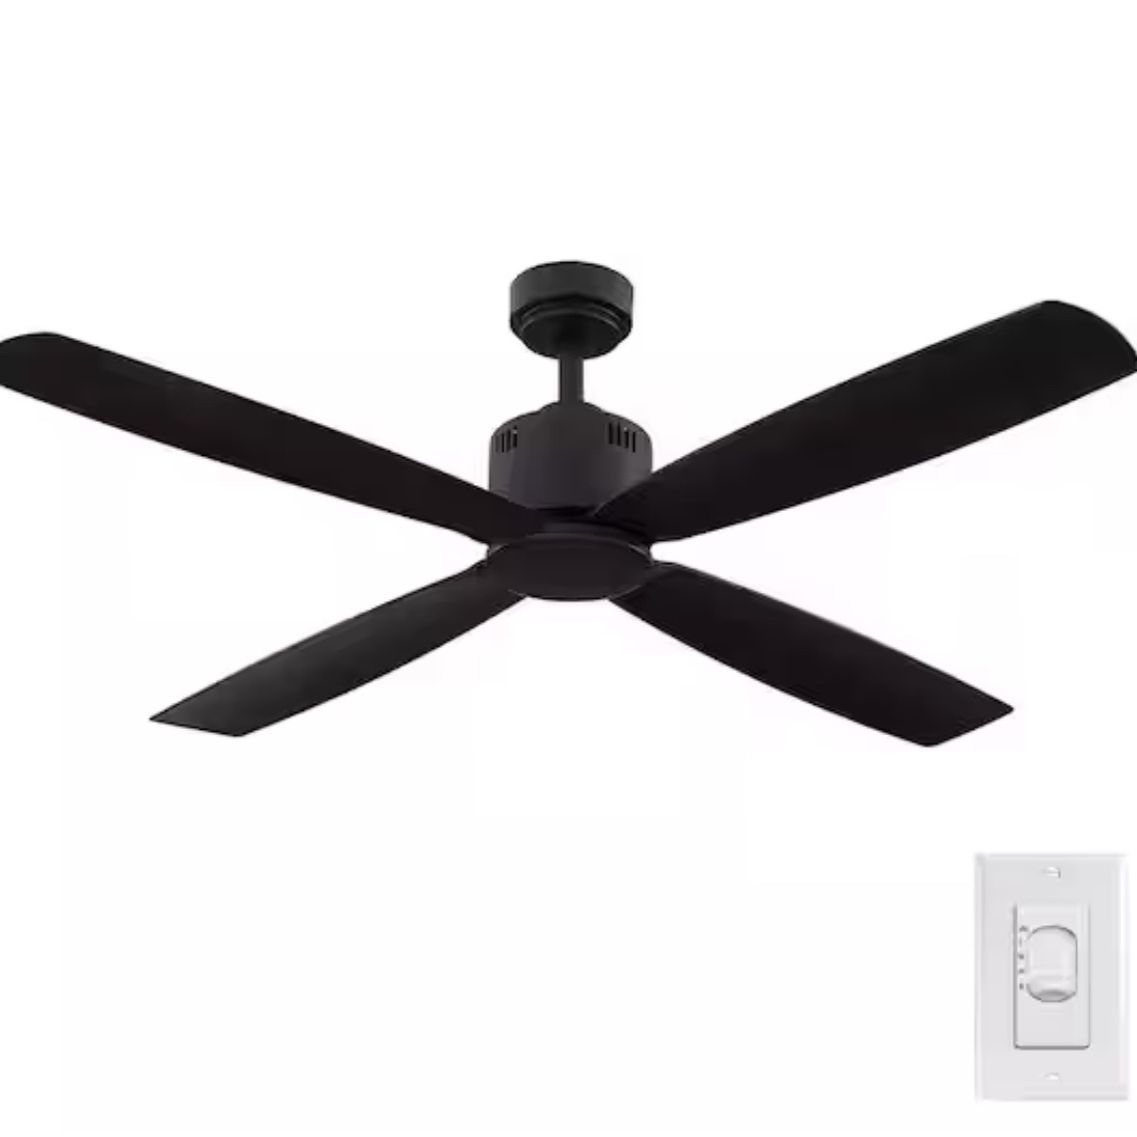 Kitteridge 52 in. Indoor/Outdoor Matte Black Ceiling Fan